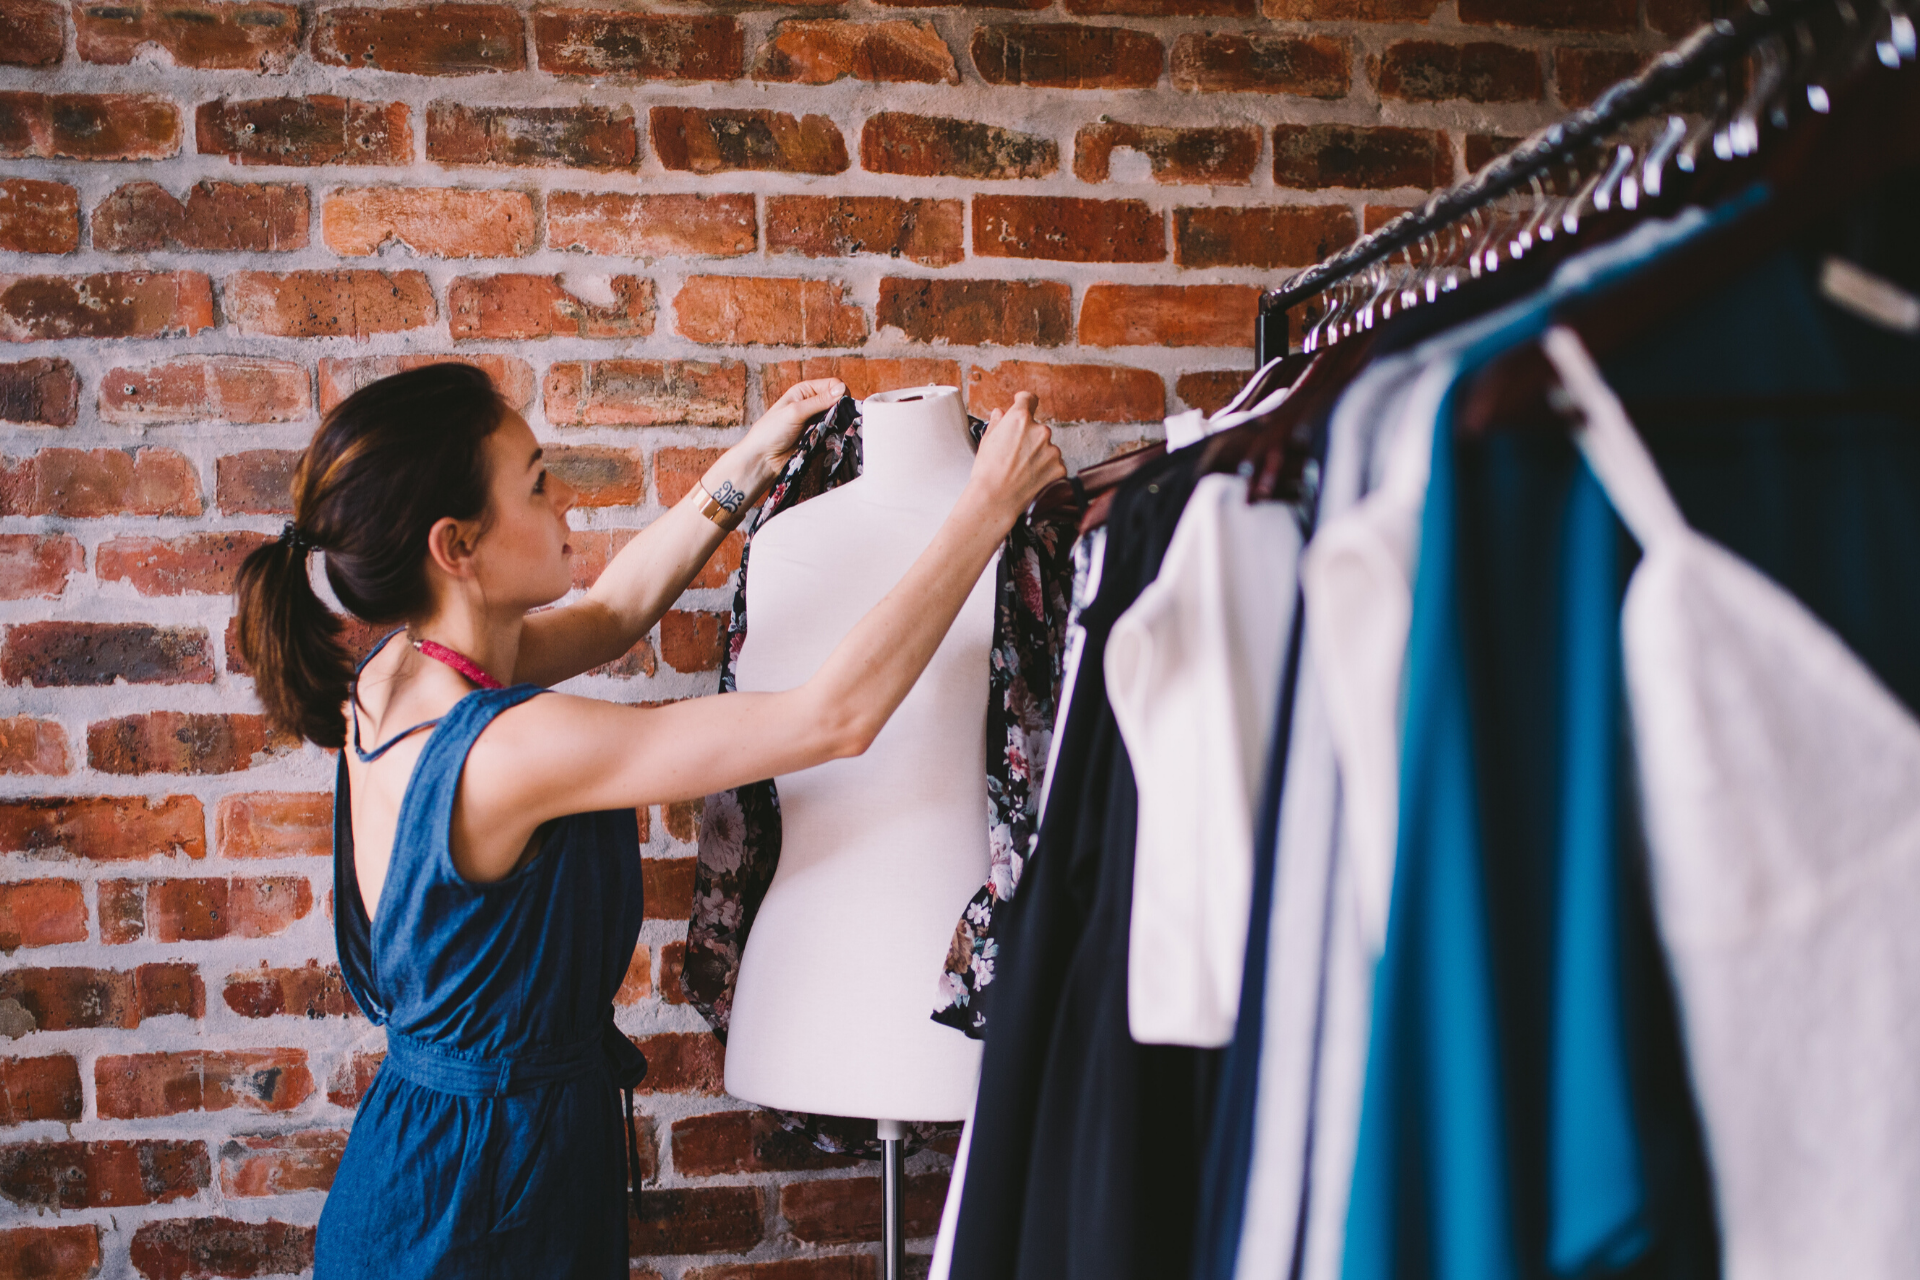 Sales Assistant – Fashion retail